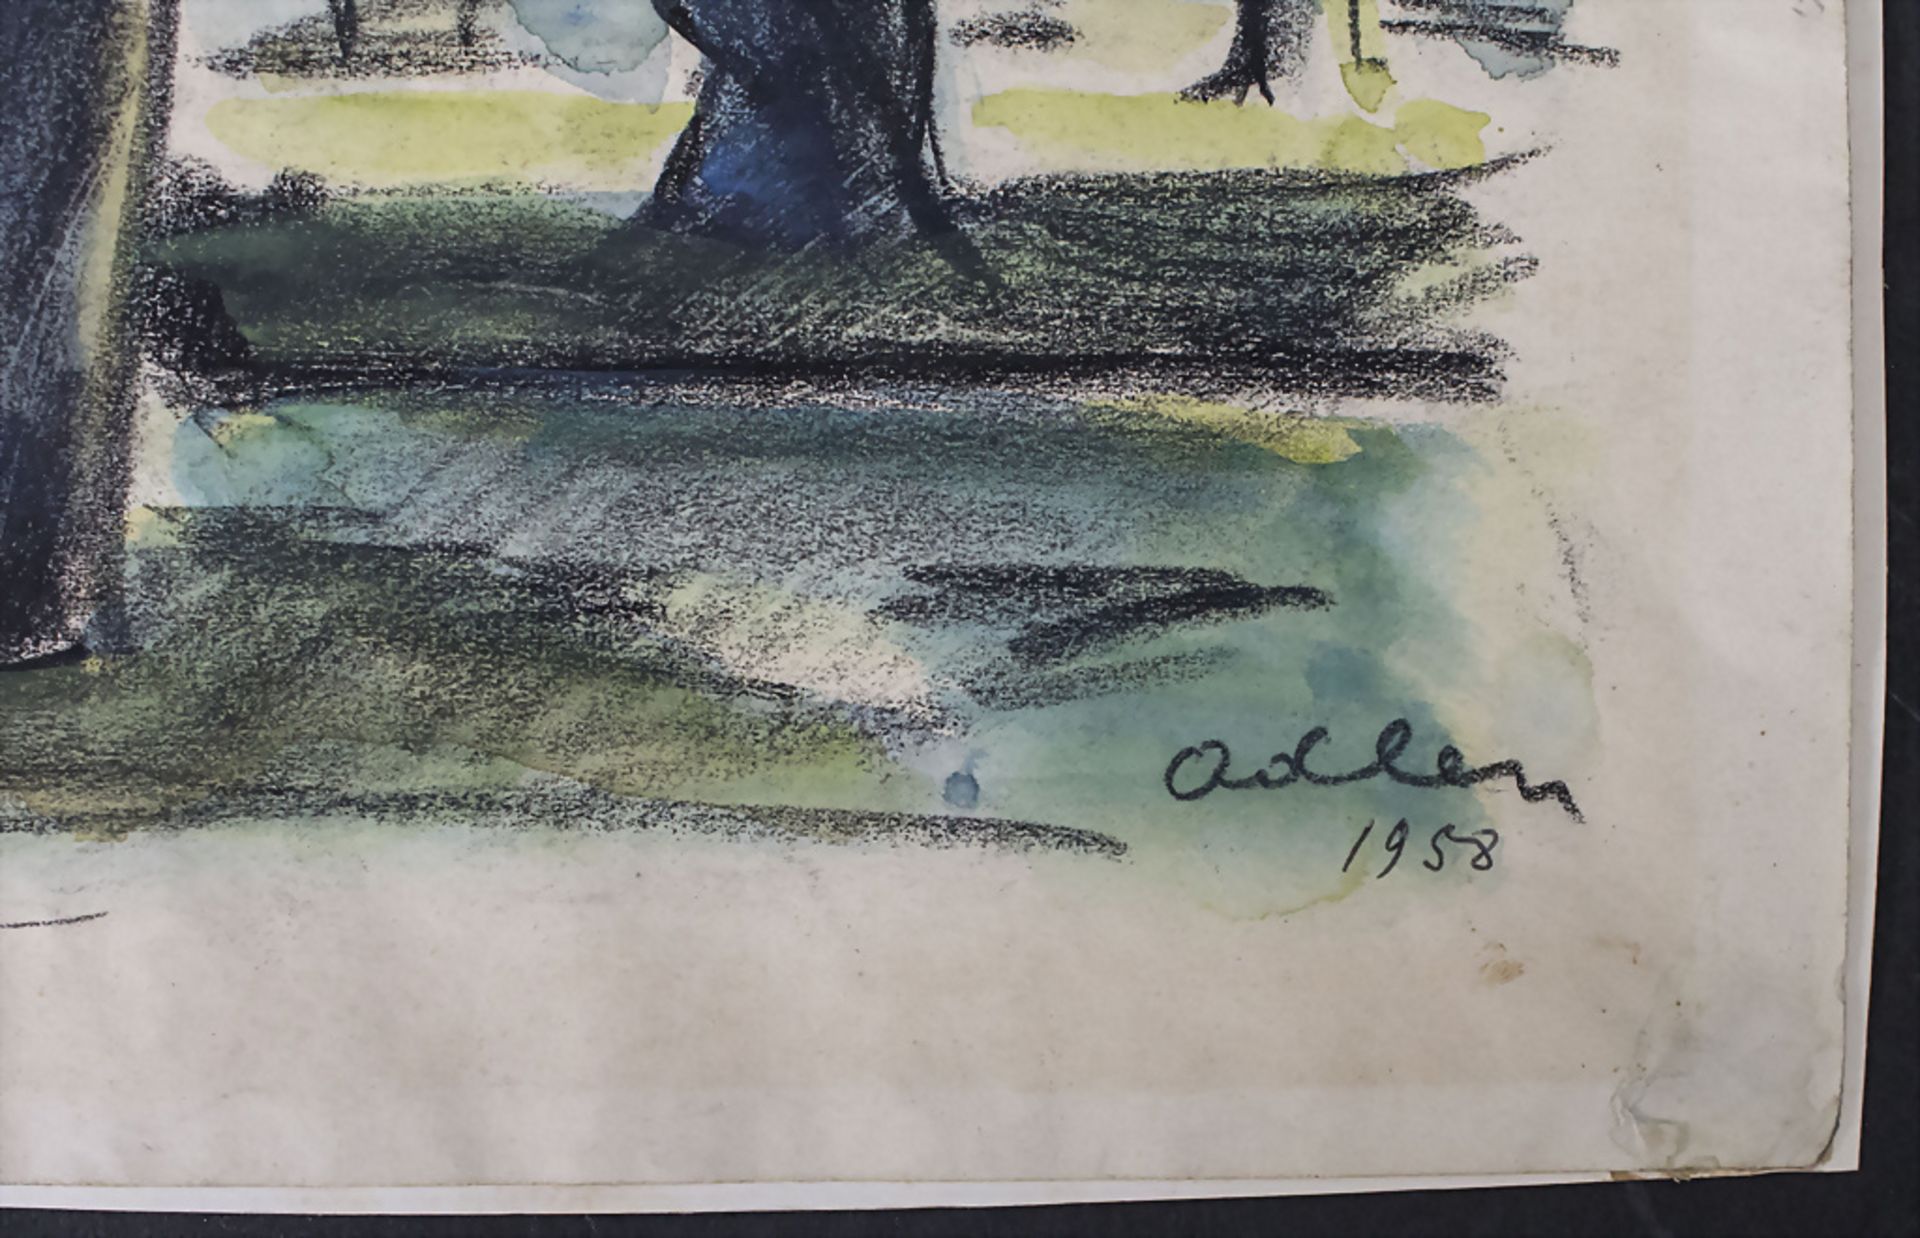 Michel ADLEN (1898-1980), 'Hain bei Cros de Cagnes' / 'A grove by Cros de Cagnes', 1958 - Image 4 of 5